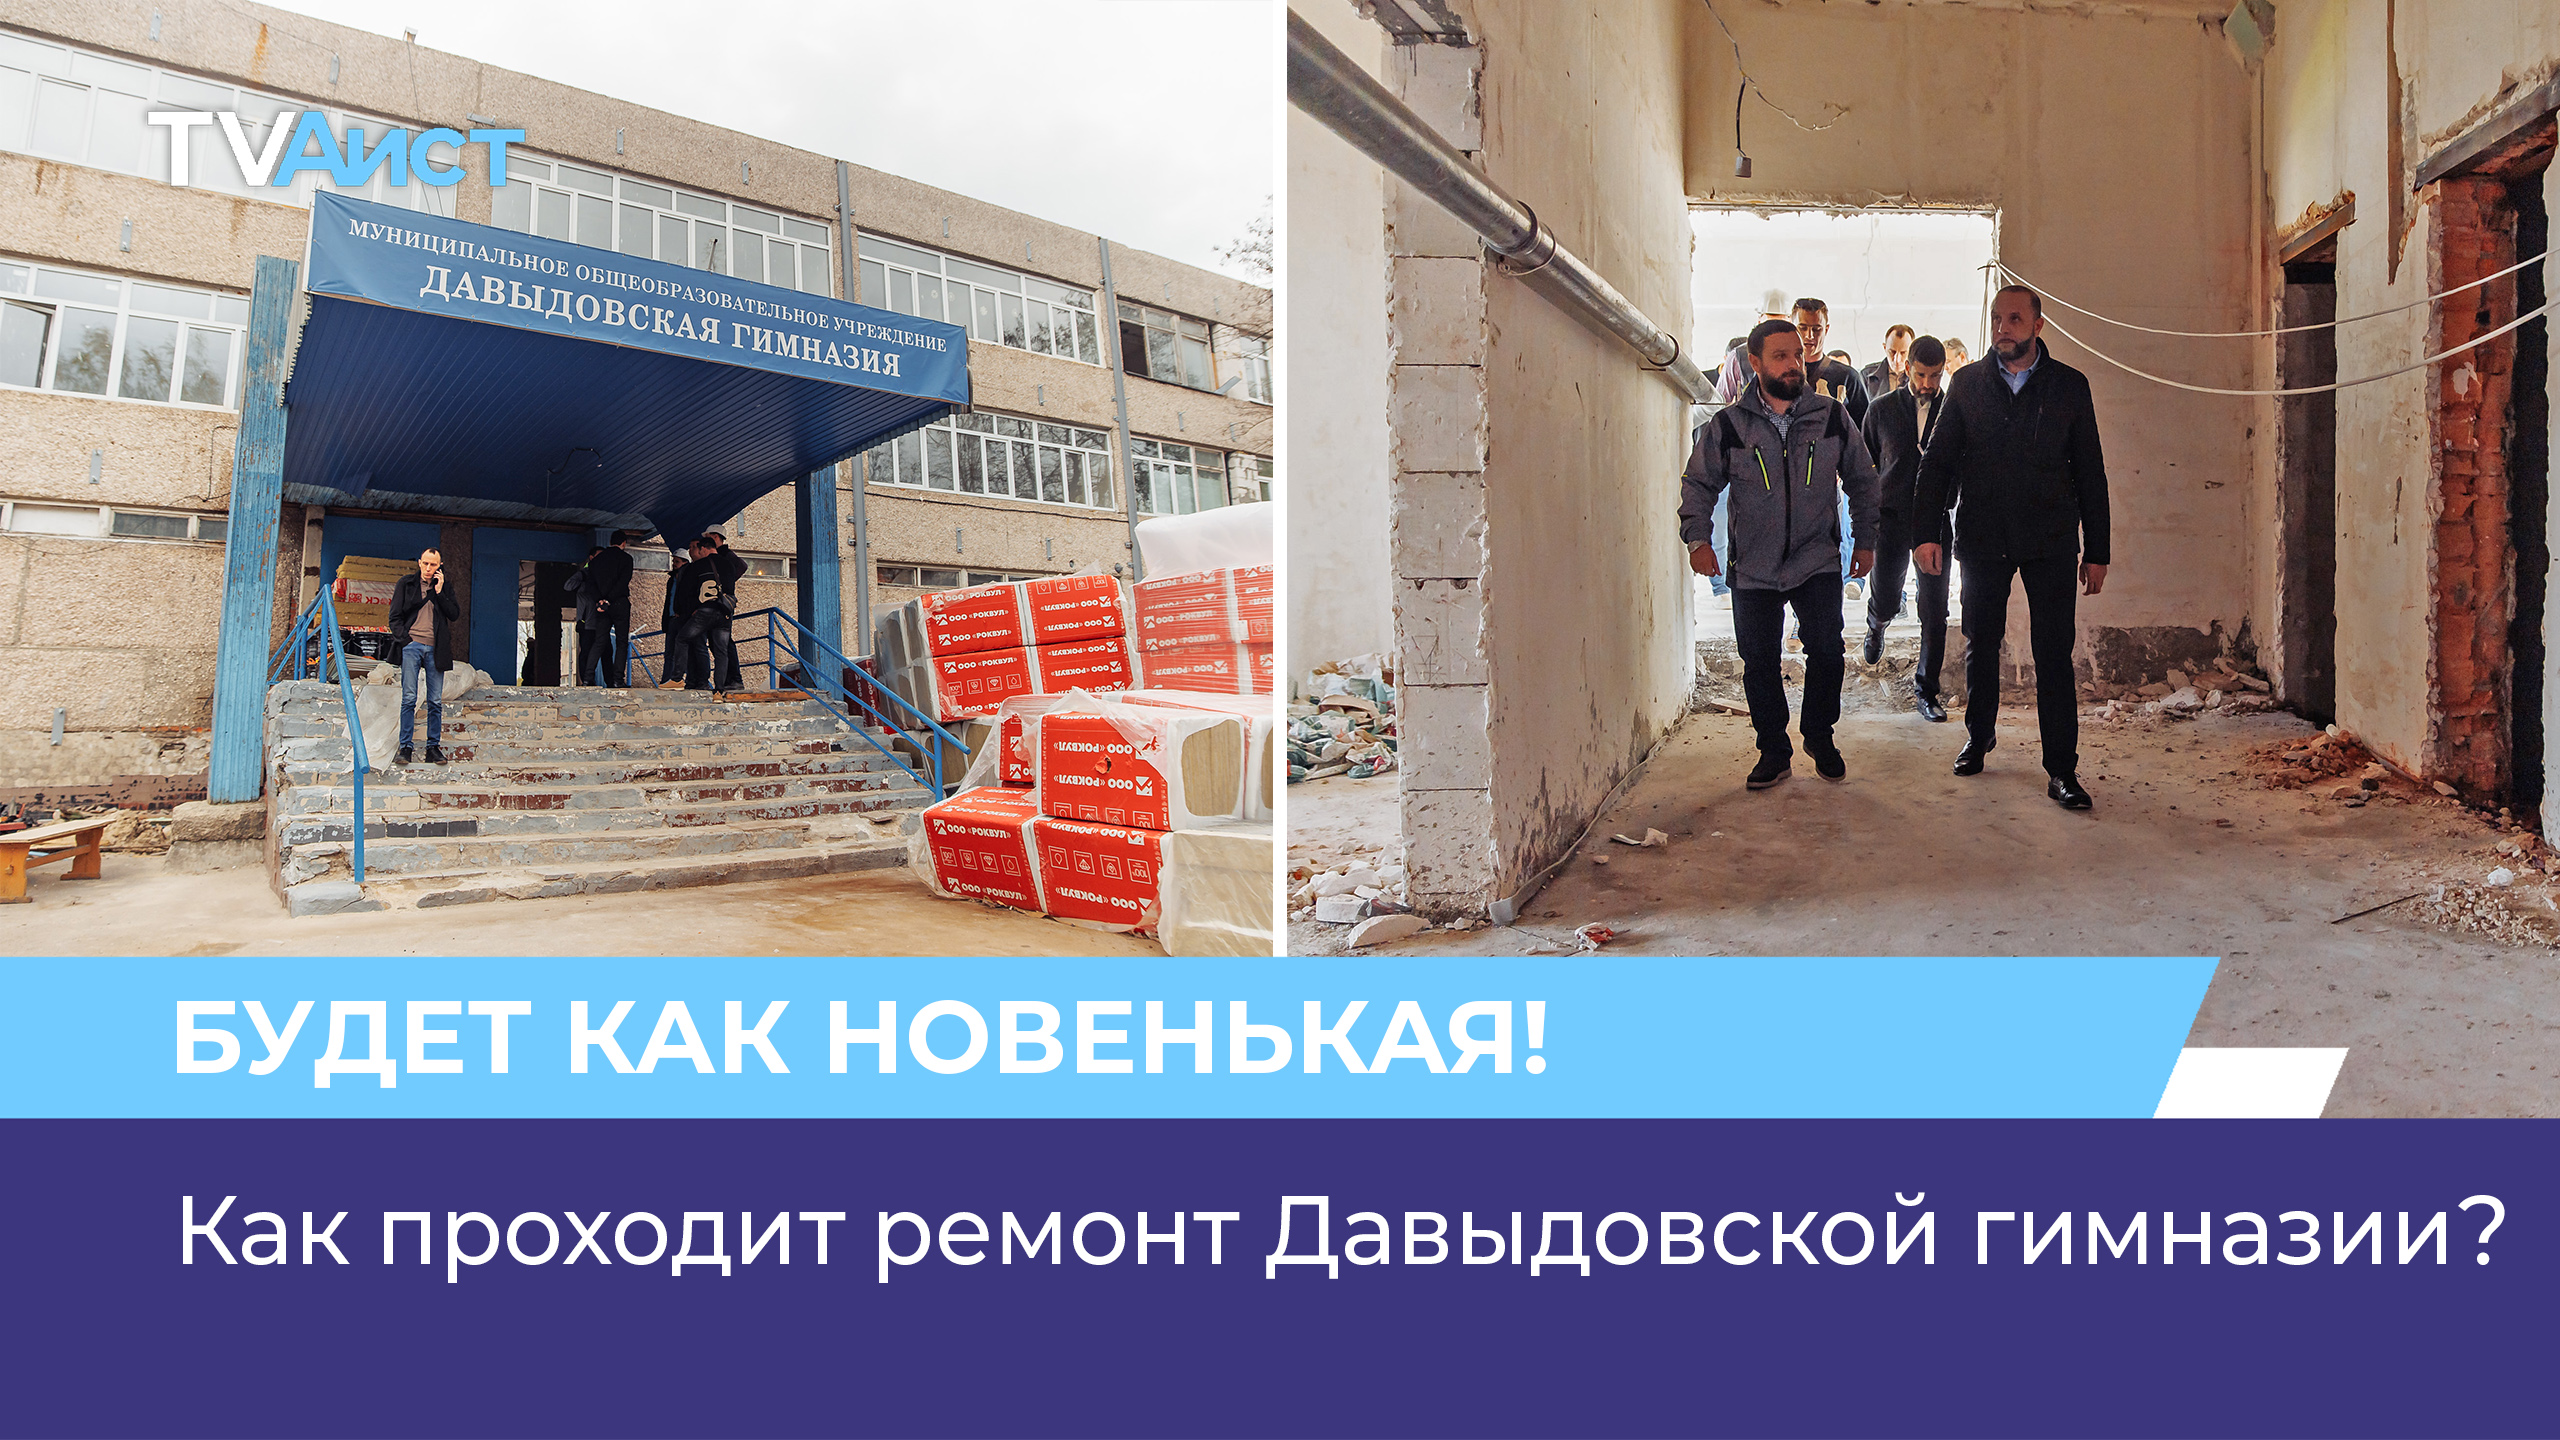 Как проходит ремонт Давыдовской гимназии?